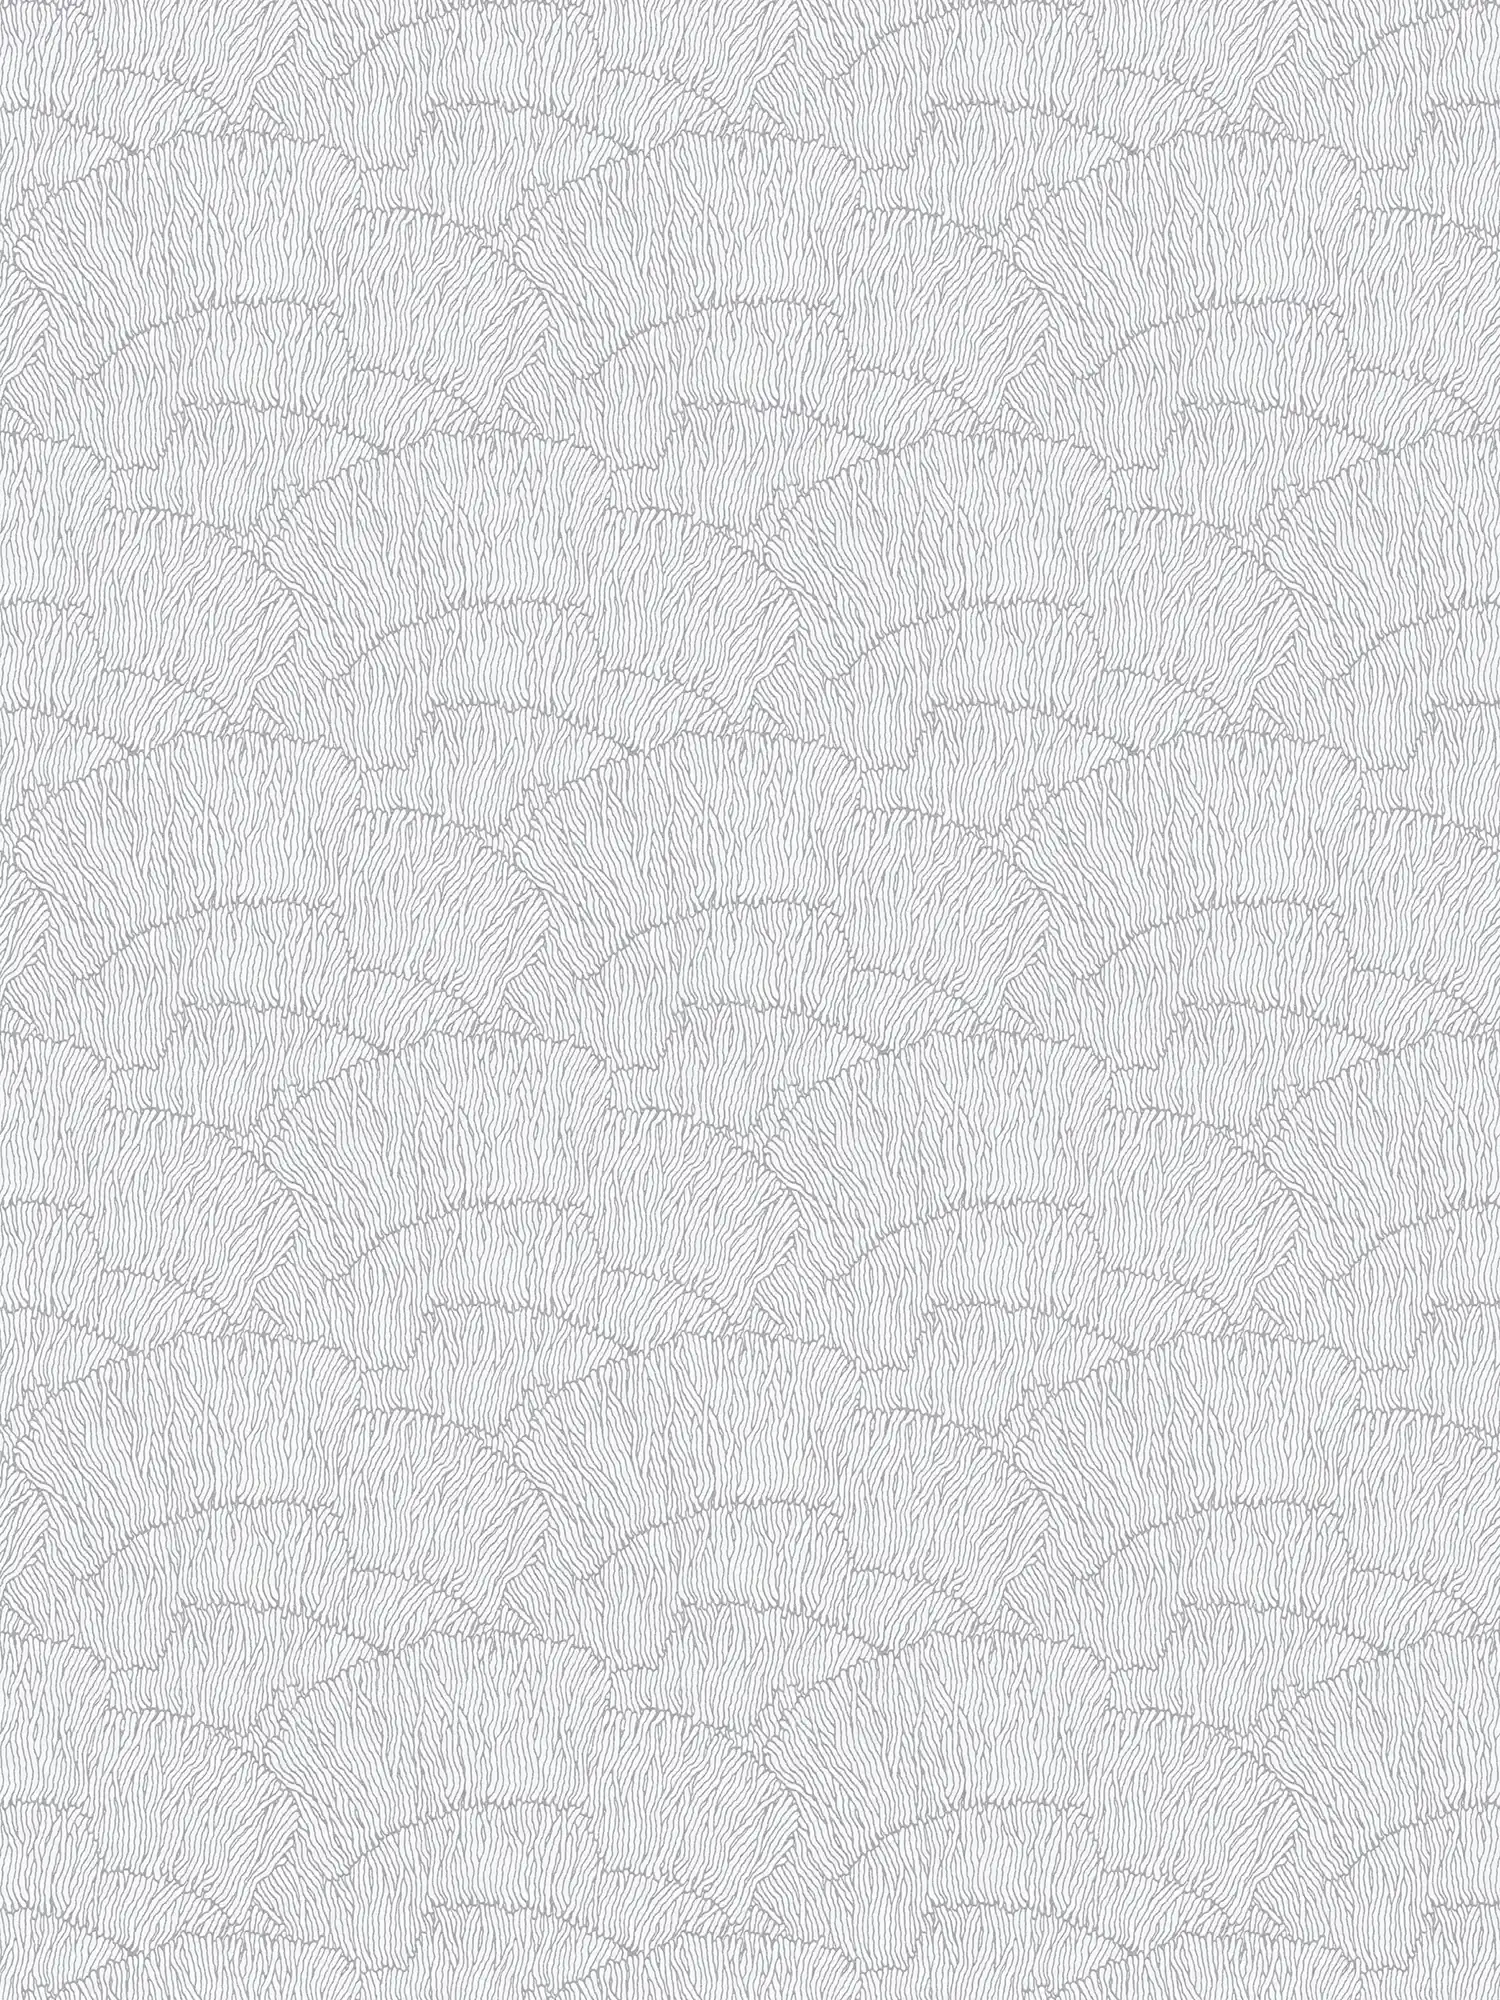 Vliesbehang met abstract patroon - zilver, wit, metallic
